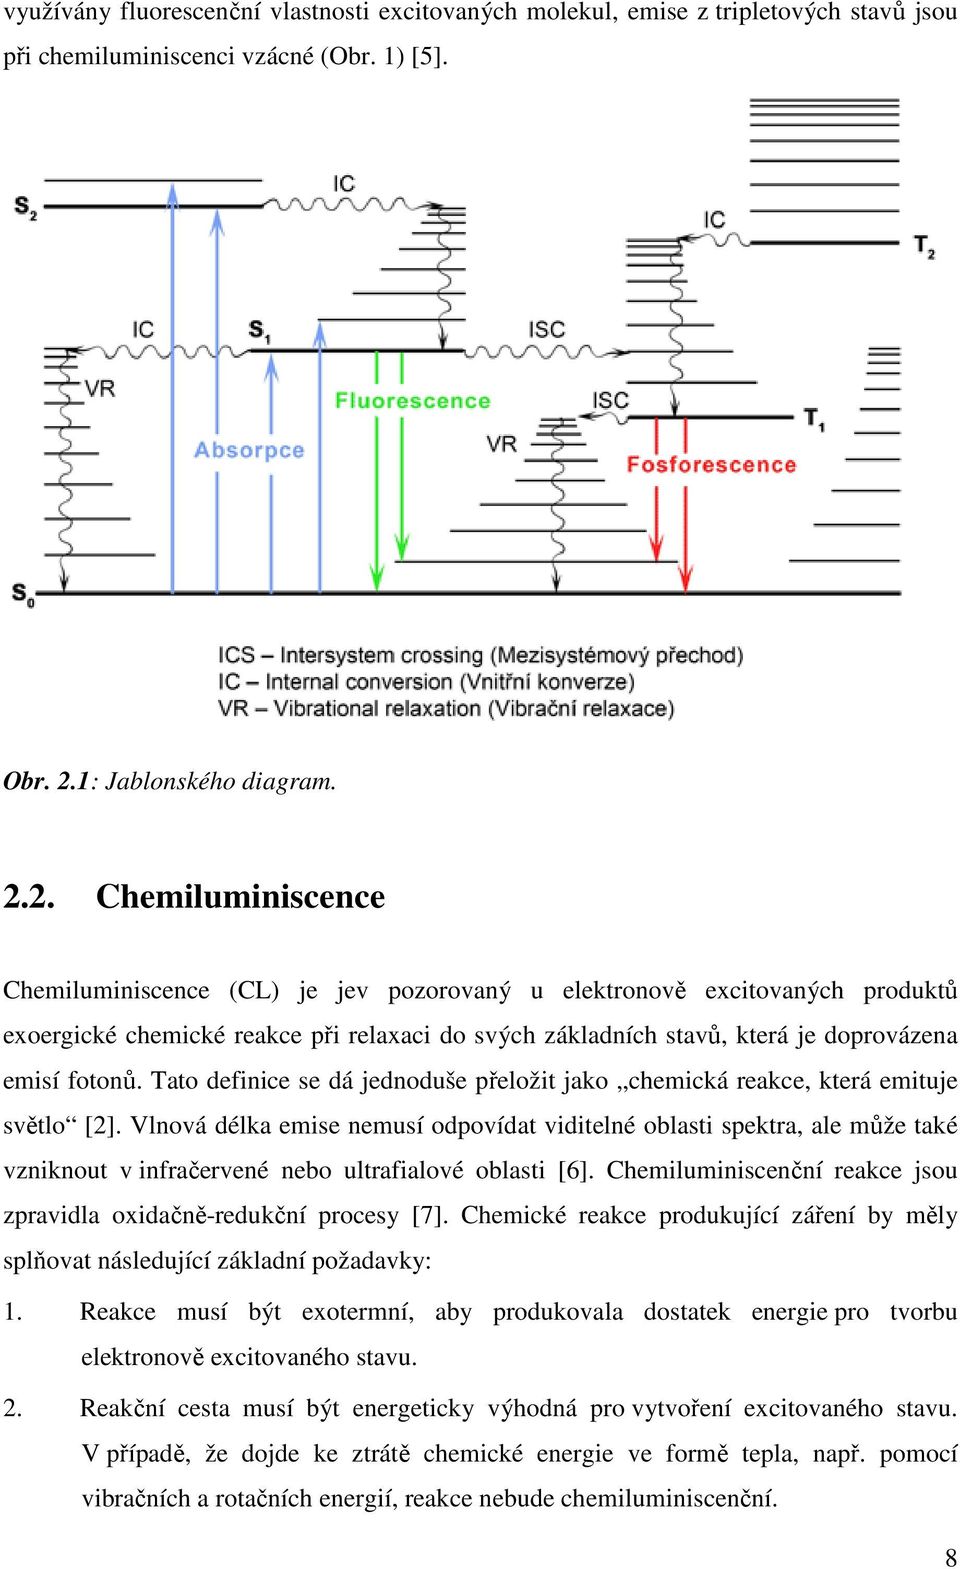 2. Chemiluminiscence Chemiluminiscence (CL) je jev pozorovaný u elektronově excitovaných produktů exoergické chemické reakce při relaxaci do svých základních stavů, která je doprovázena emisí fotonů.